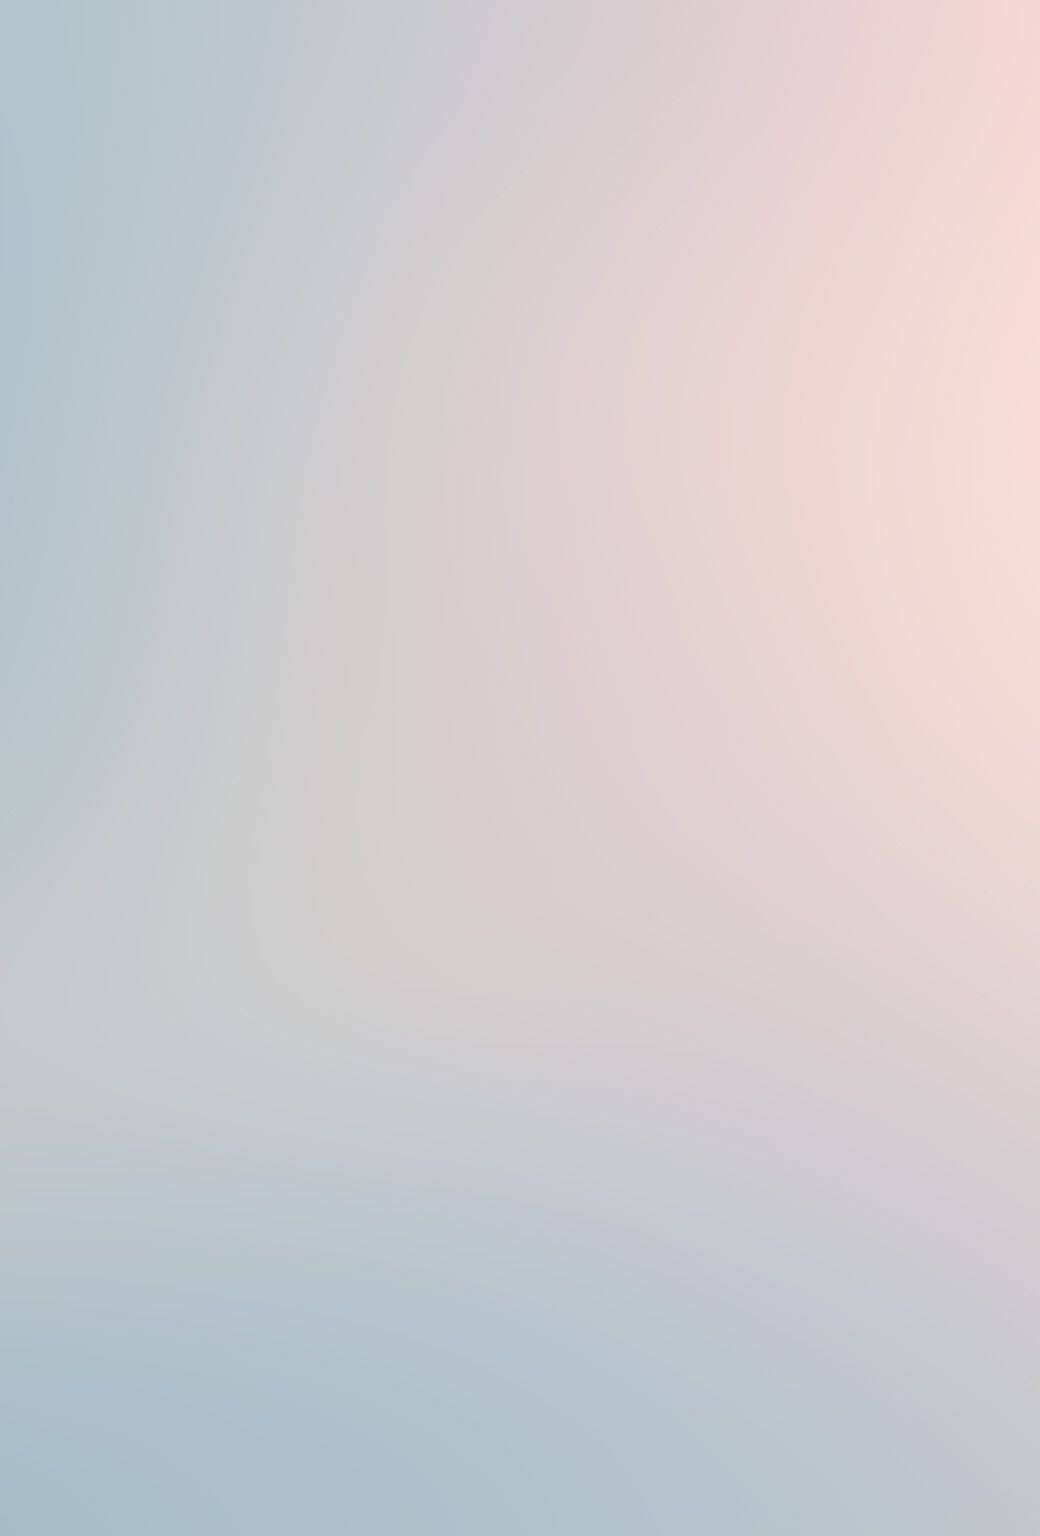  Farbverlauf Hintergrundbild 1040x1536. Downloaden Sanfterottöne Für Eine Traumhafte Ästhetik Wallpaper